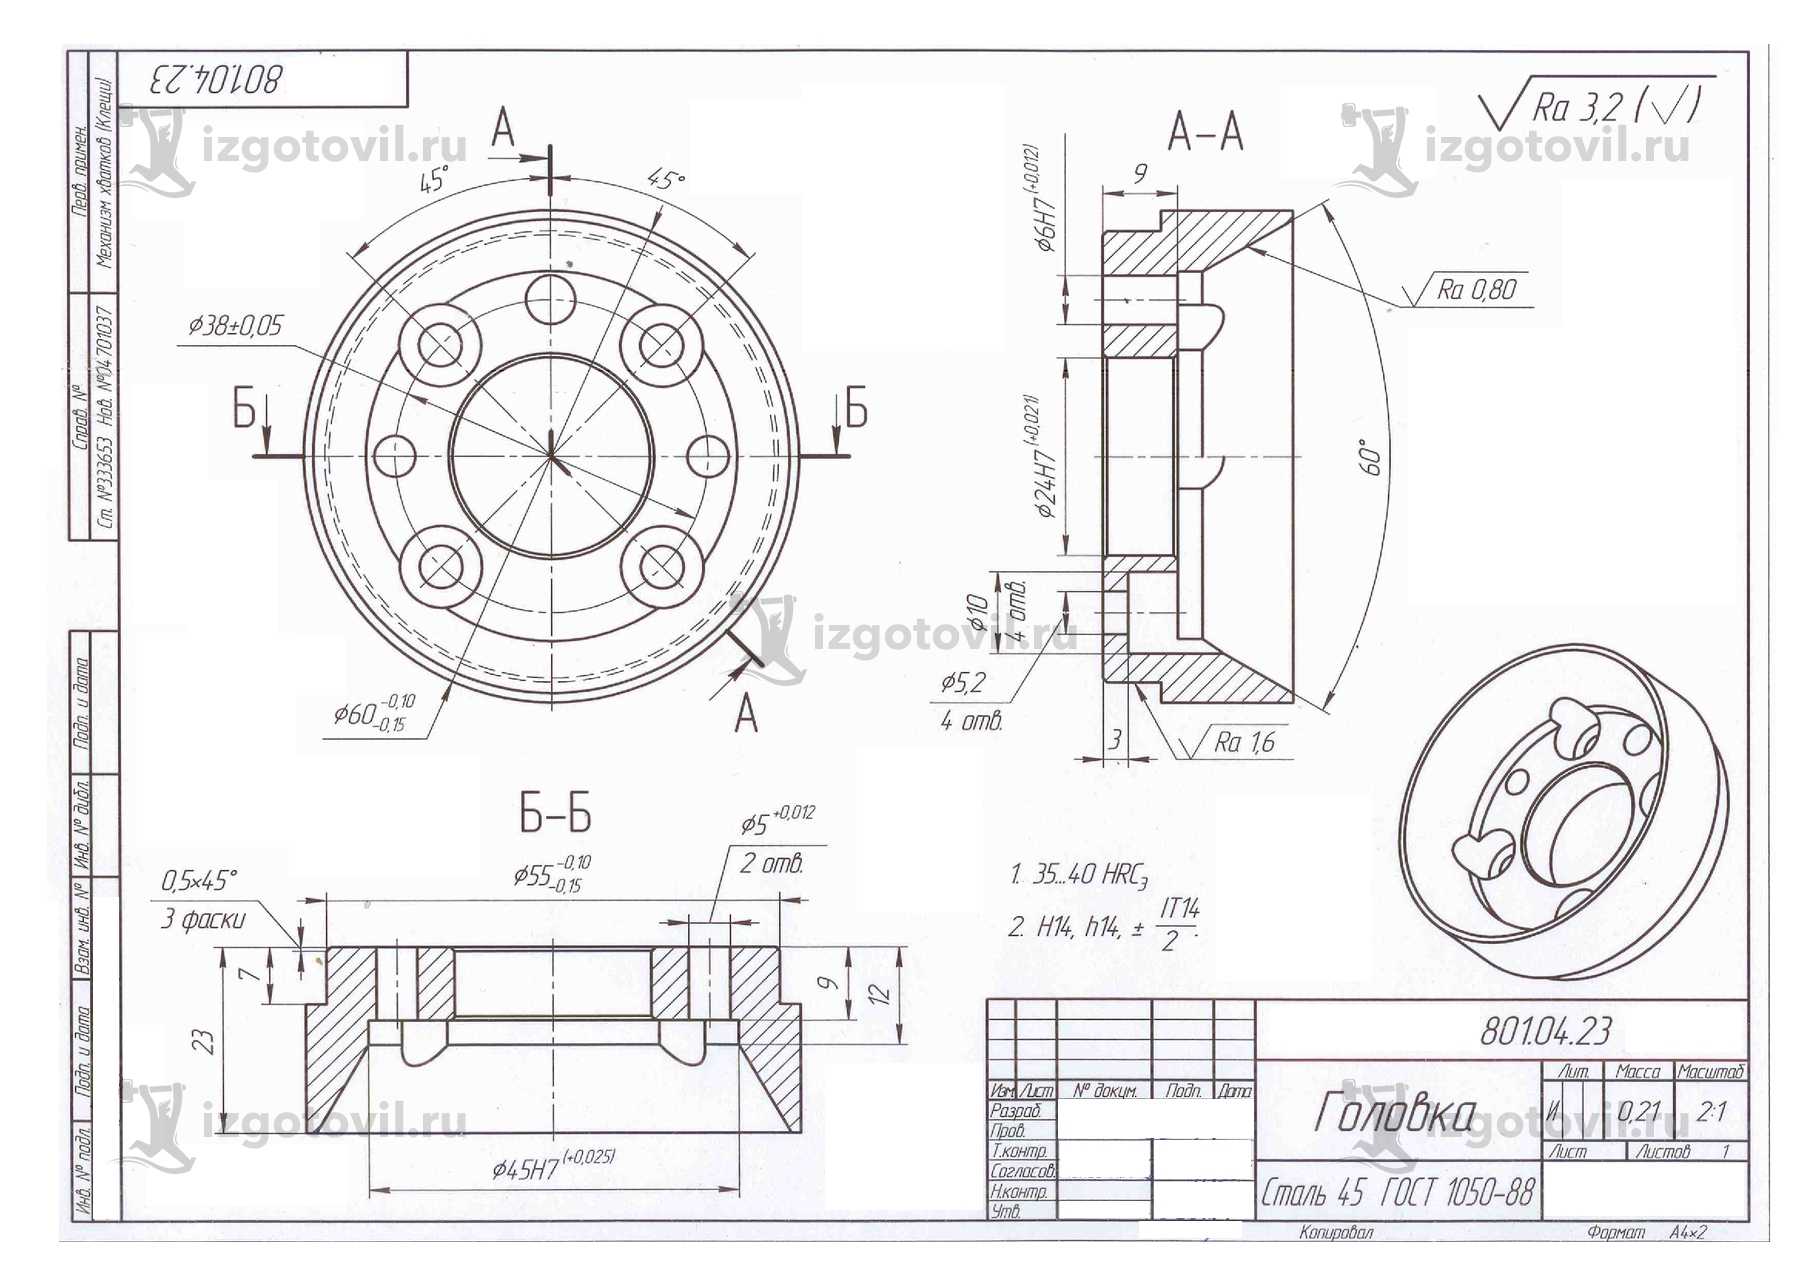 Изготовление деталей по чертежам: ротор, головка, валы, втулка и барабан